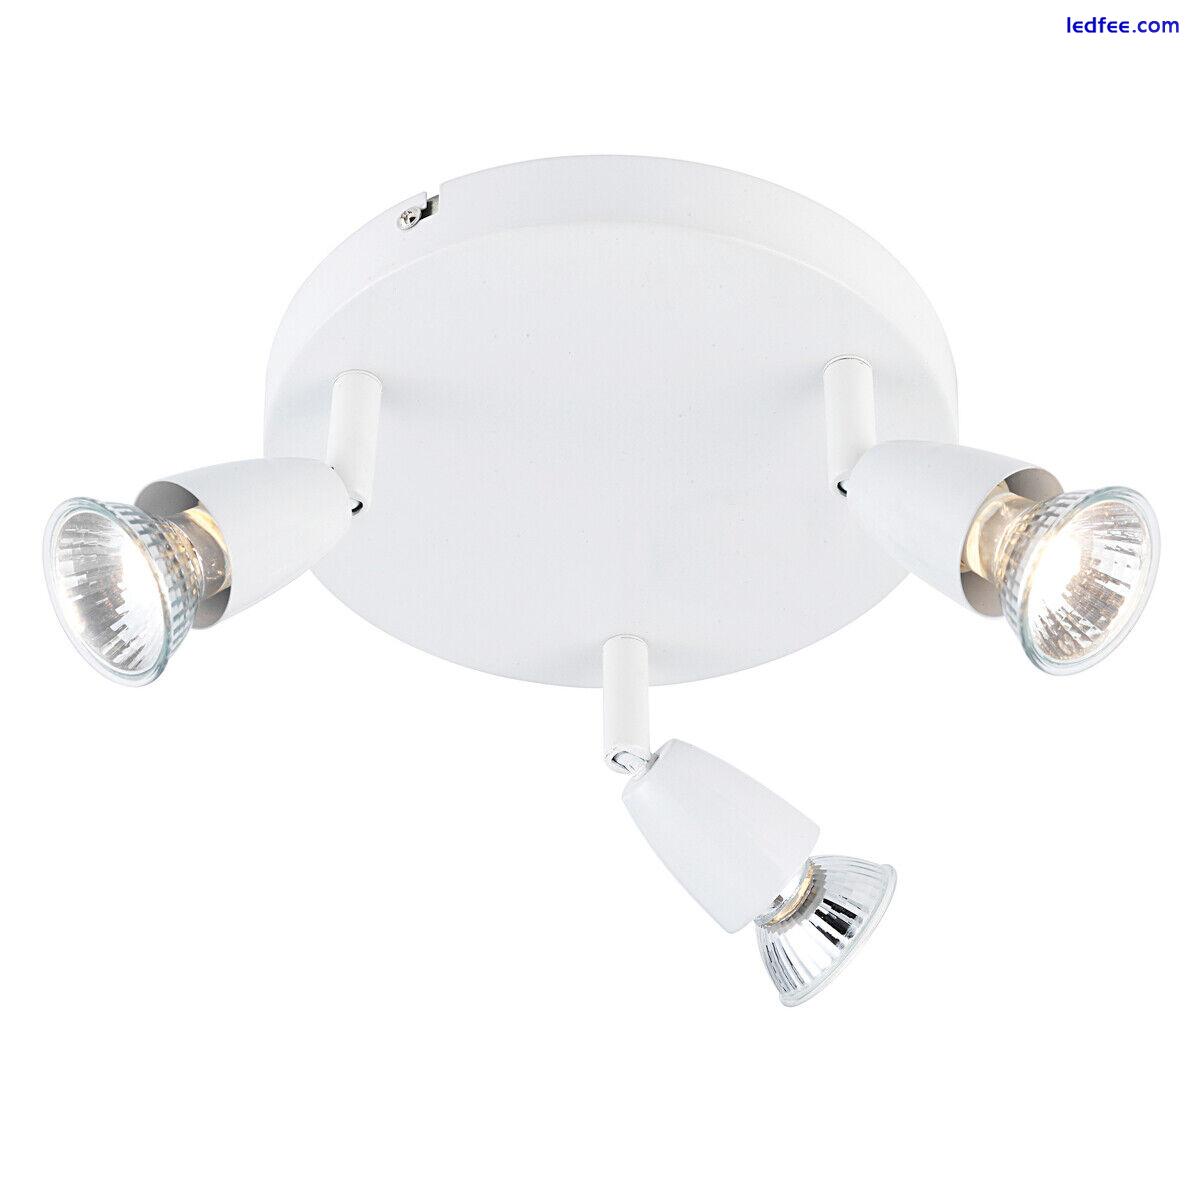 Saxby Amalfi Triple Head GU10 Spotlight Swivel Ceiling Mounted Dimmable Light 2 